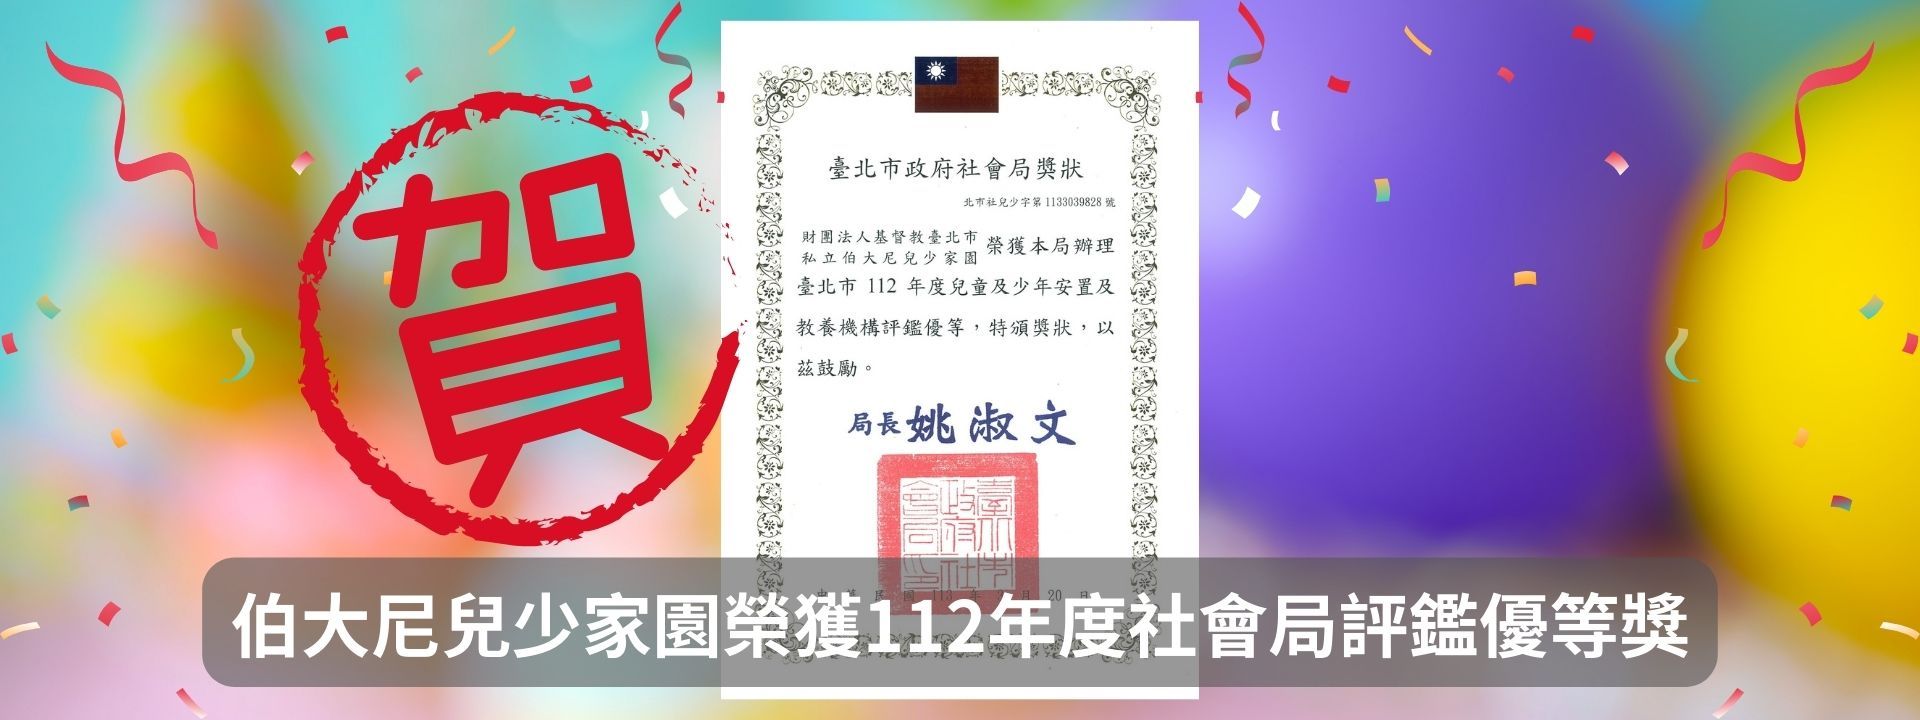 伯大尼兒少家園榮獲112年度台北市政府社會局評鑑優等獎